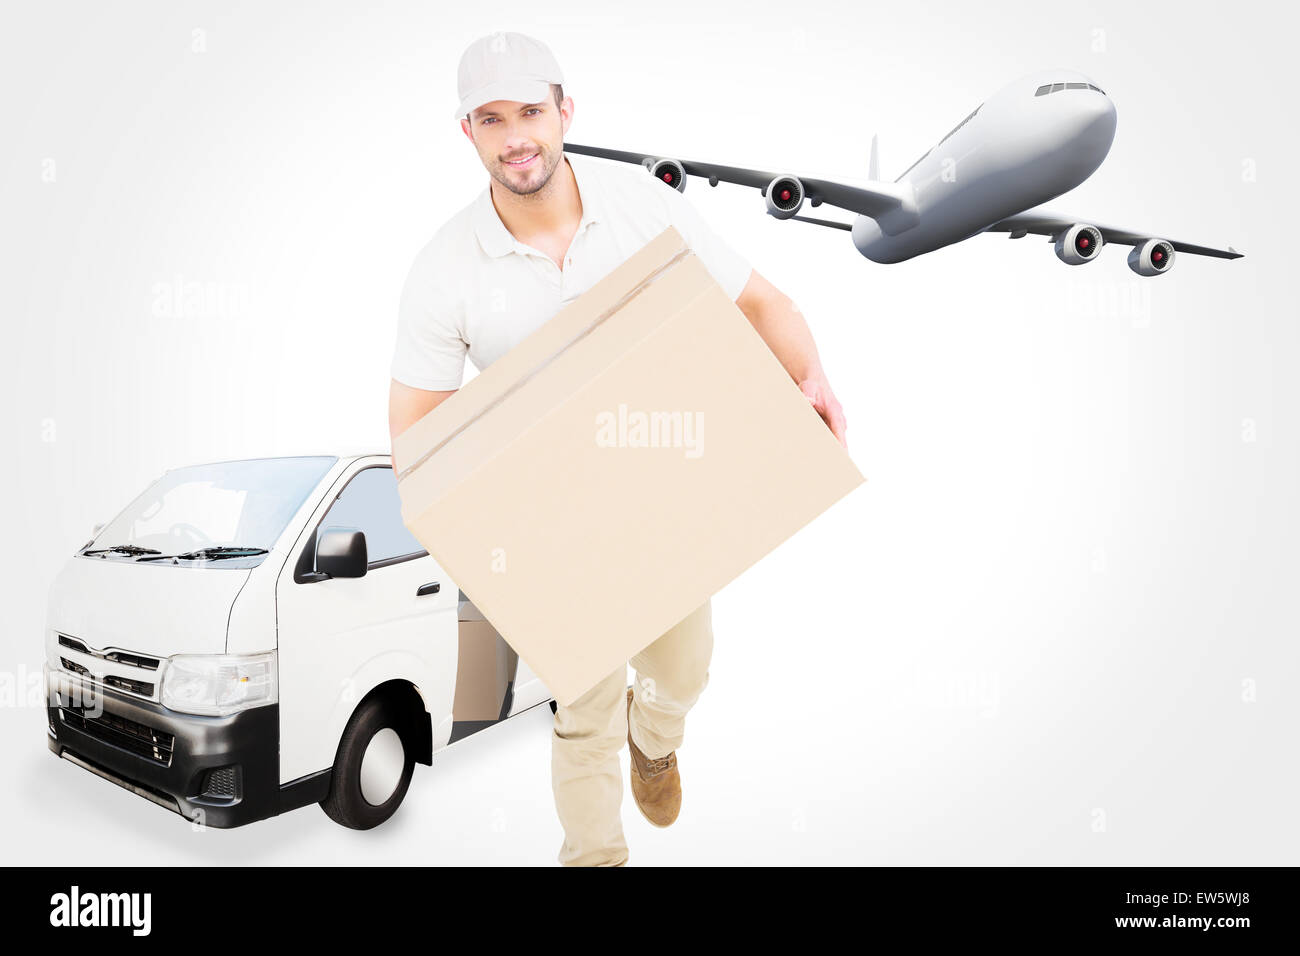 Immagine composita di consegna uomo con scatola di cartone in esecuzione Foto Stock